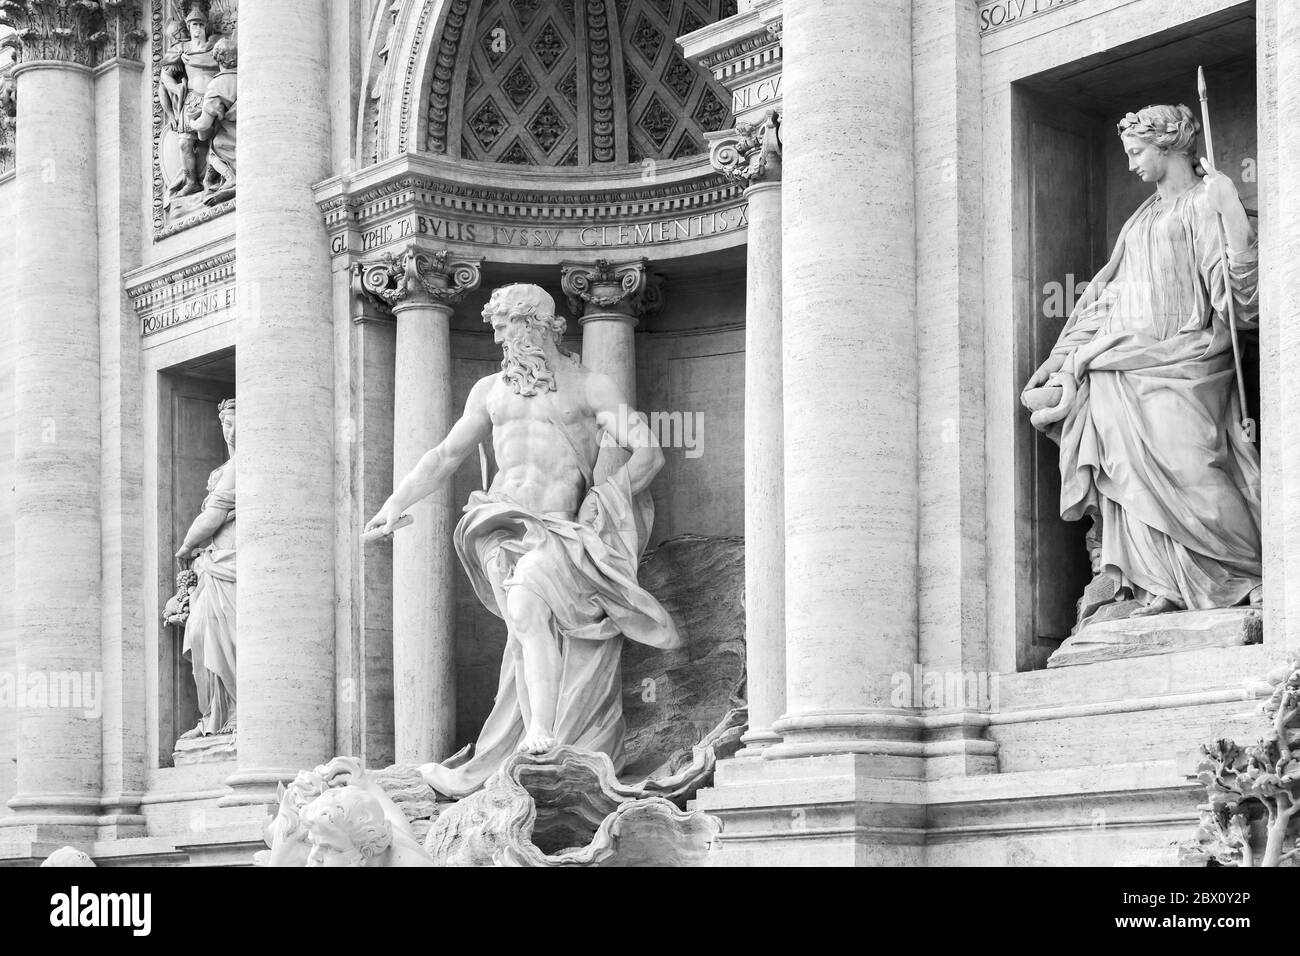 Rom, Italien - 13. Februar 2016: Skulpturen des Trevi-Brunnens. Es ist eine der beliebtesten Touristenattraktionen in Rom. Schwarzweiß-Foto Stockfoto